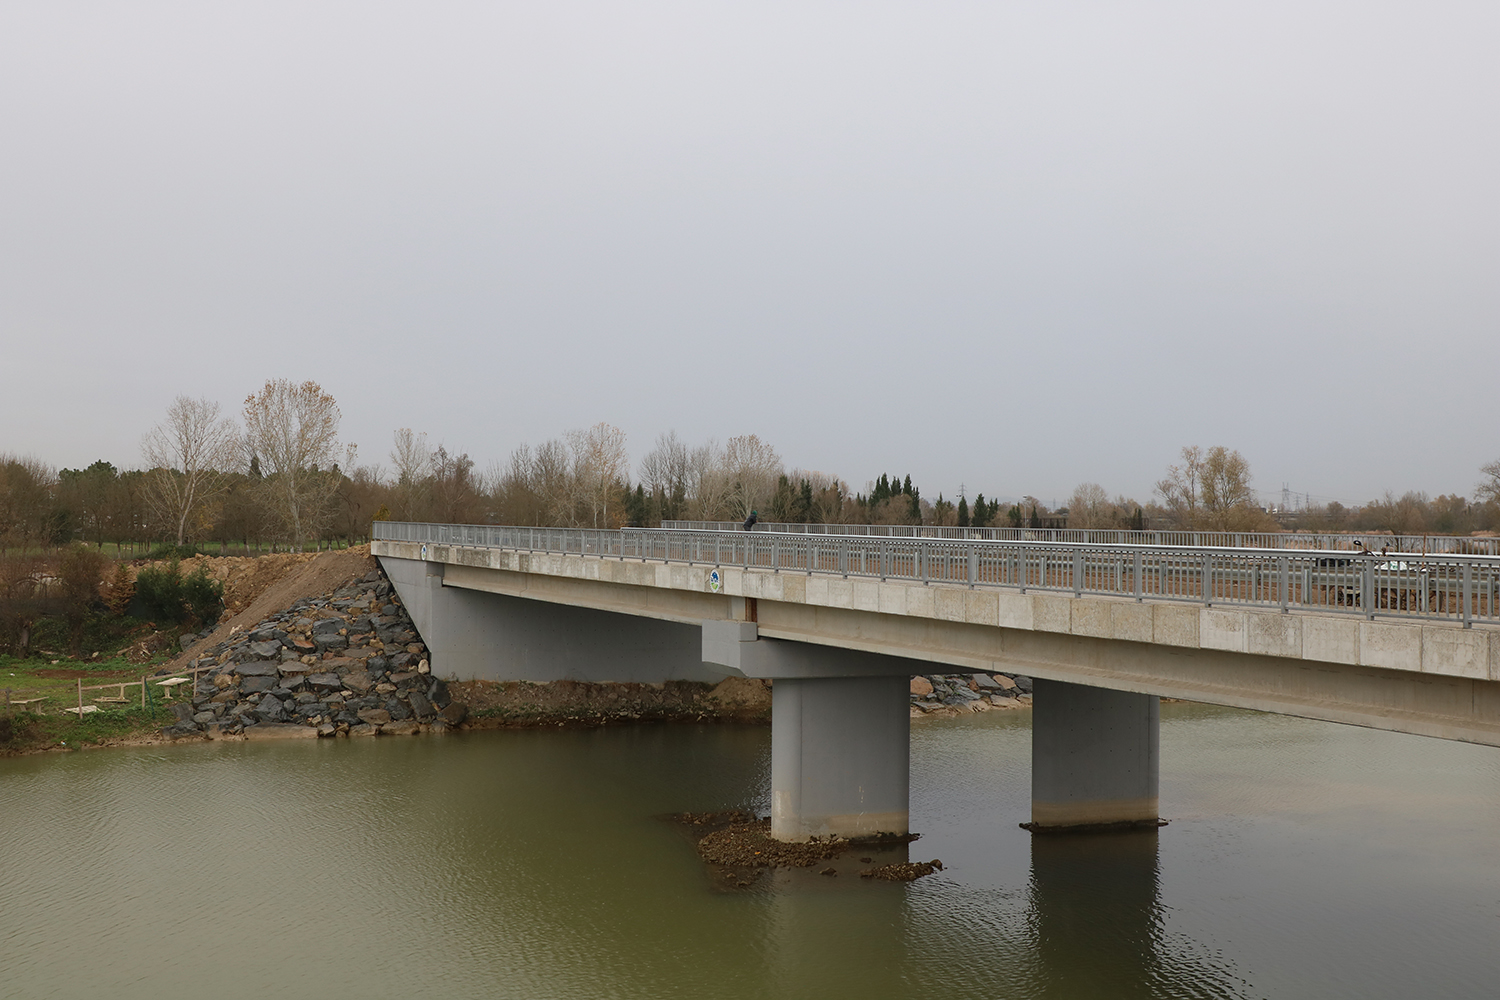 Arifiye’nin yeni köprüsü tamamlandı